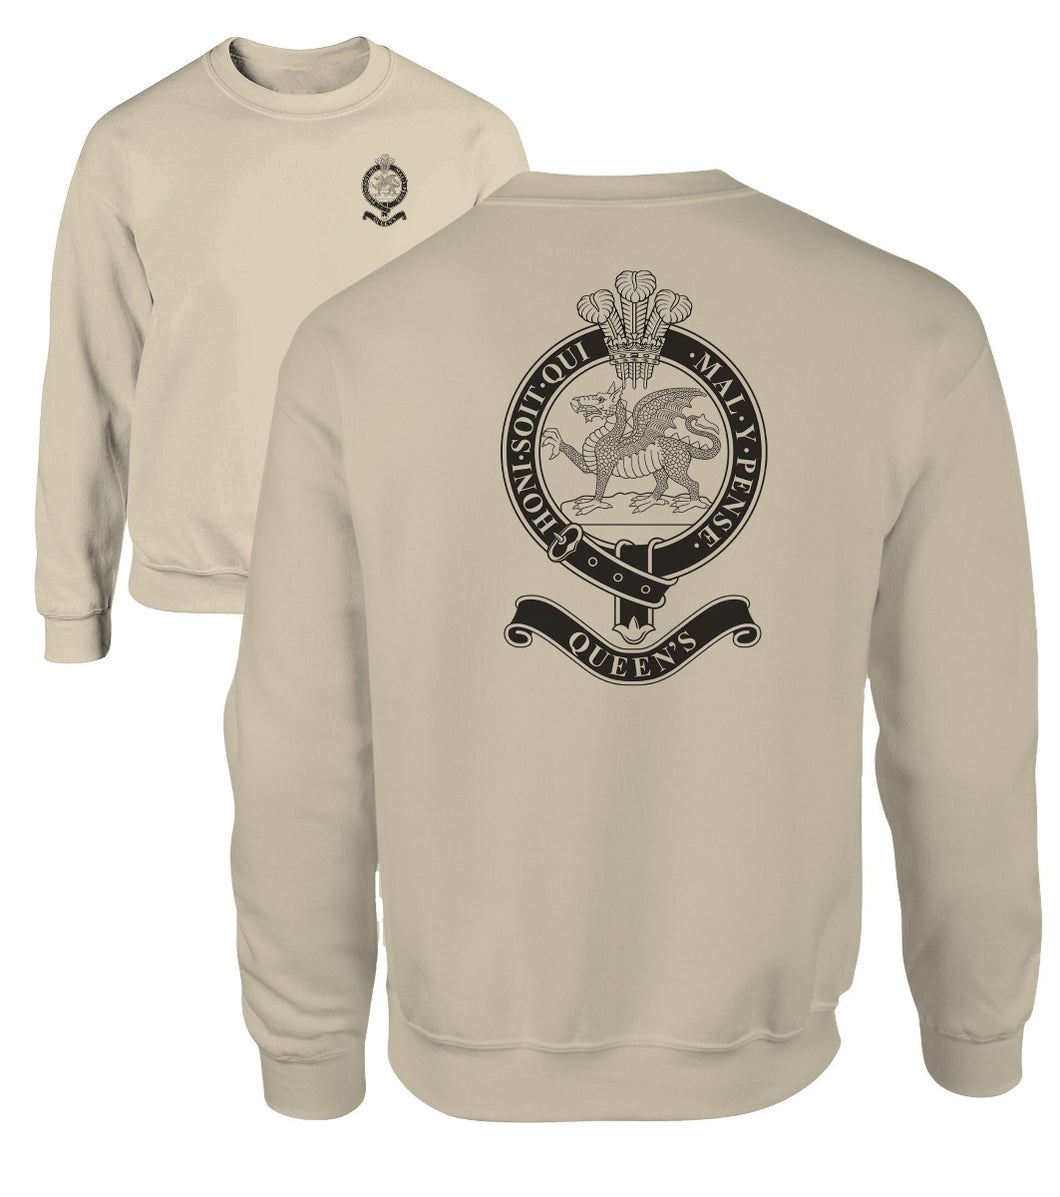 Double Printed Queen's Regiment Sweatshirt